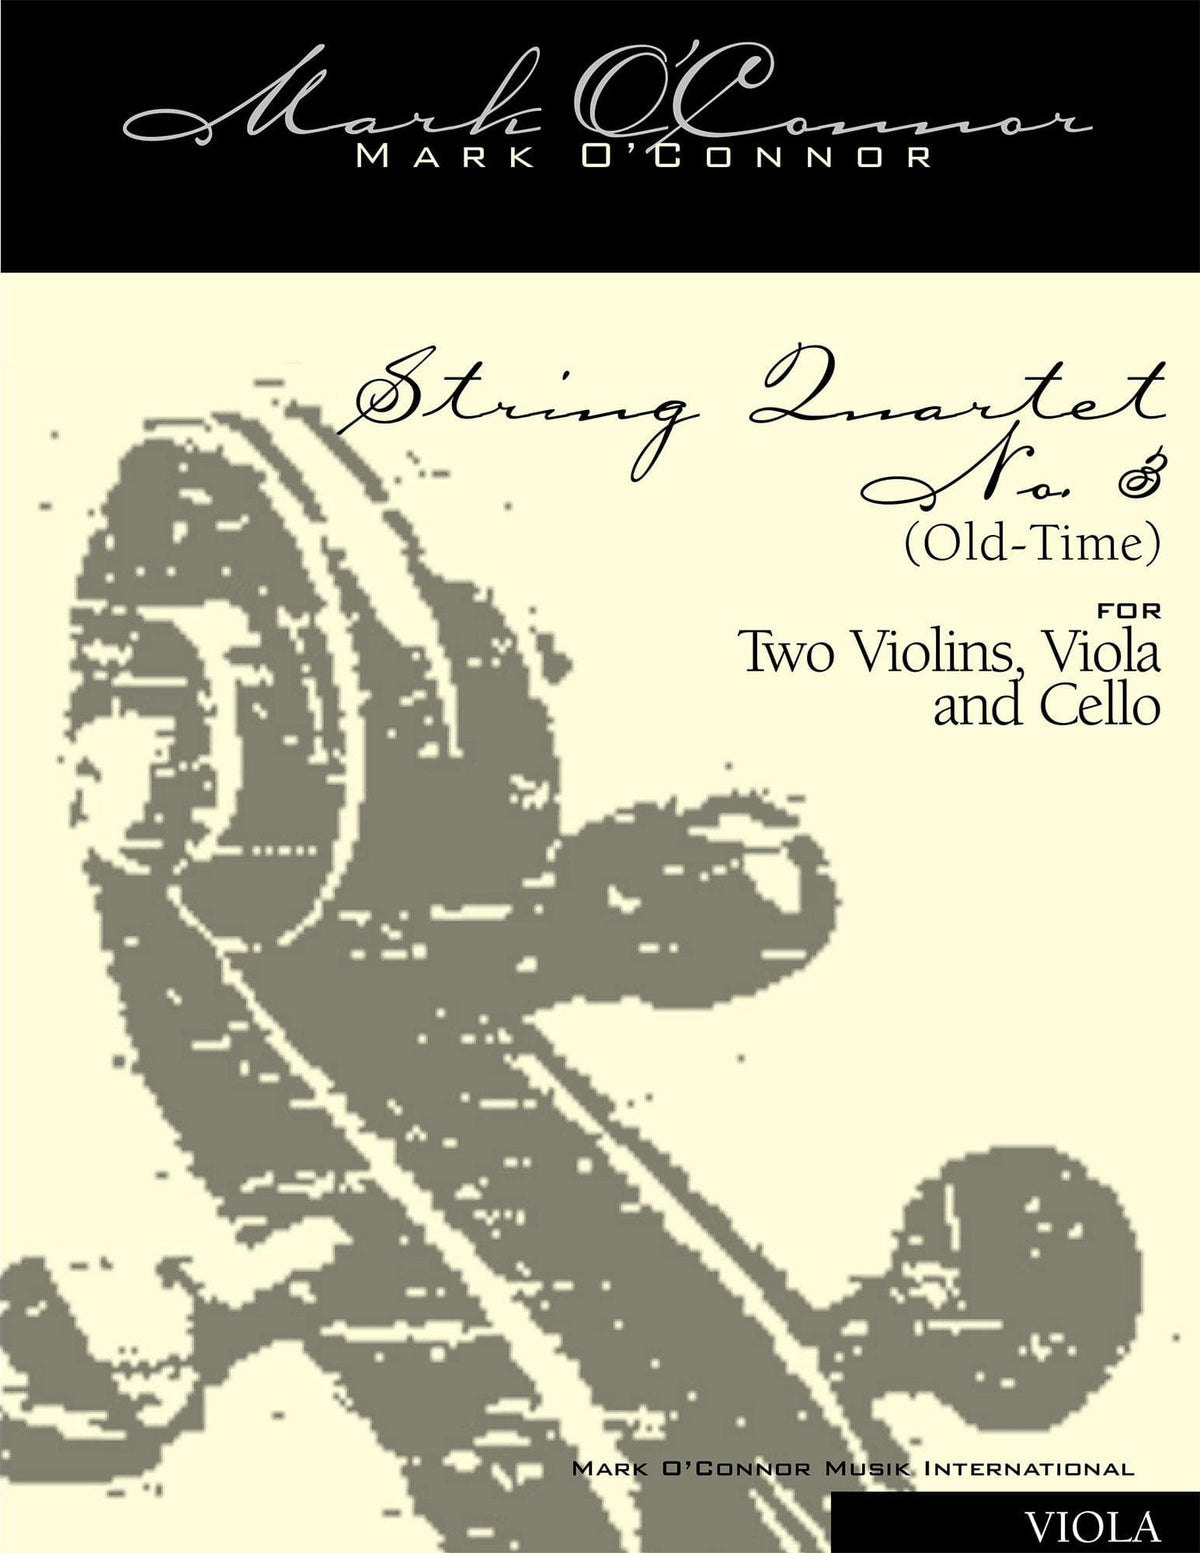 O'Connor, Mark - String Quartet No. 3 (Old-Time) for 2 Violins, Viola, and Cello - Viola - Digital Download